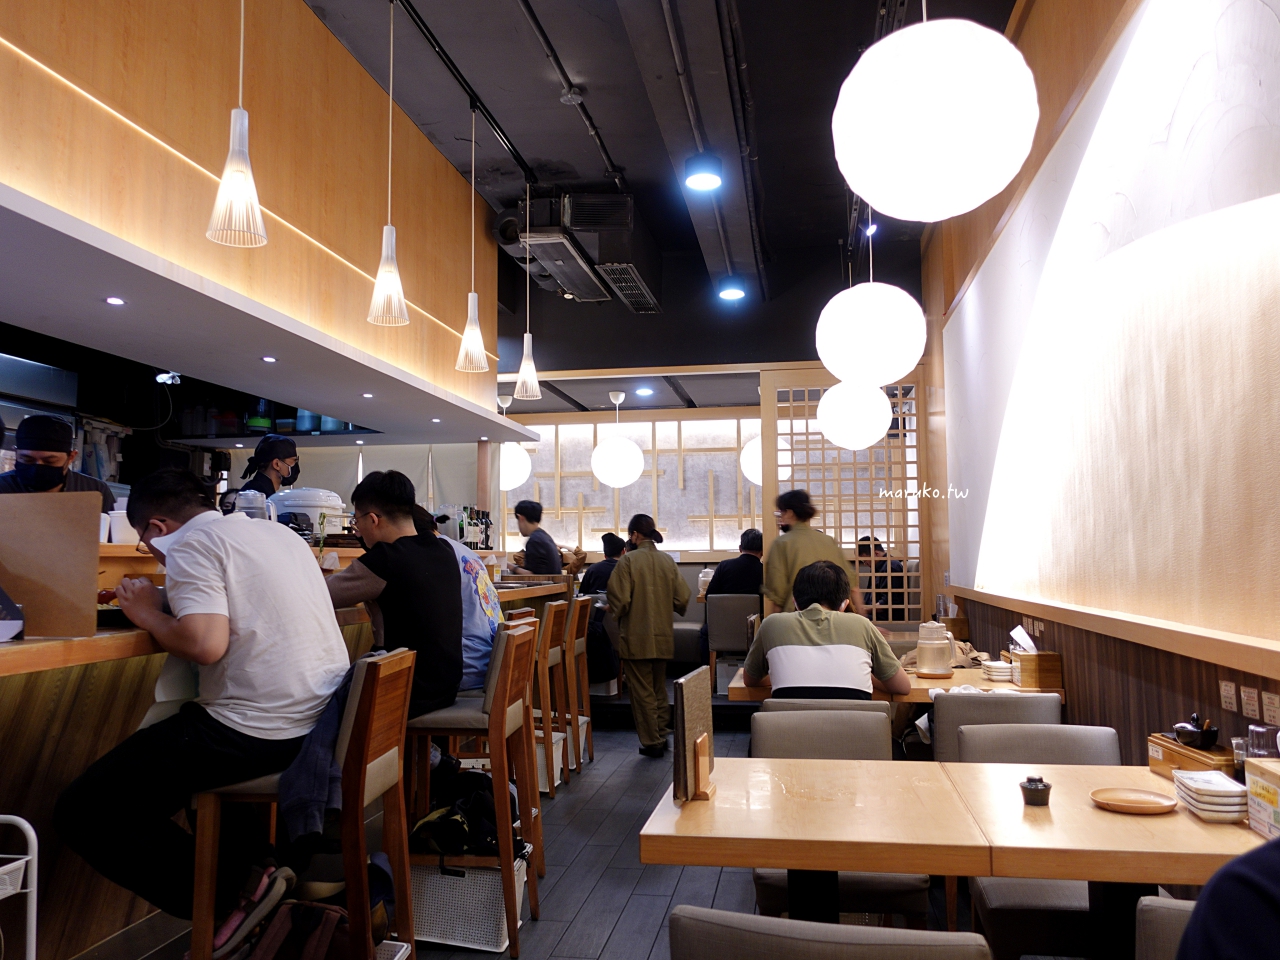 【台北】麵屋千雲 營業至凌晨三點 座位最多 環境最舒適的拉麵店 @Maruko與美食有個約會